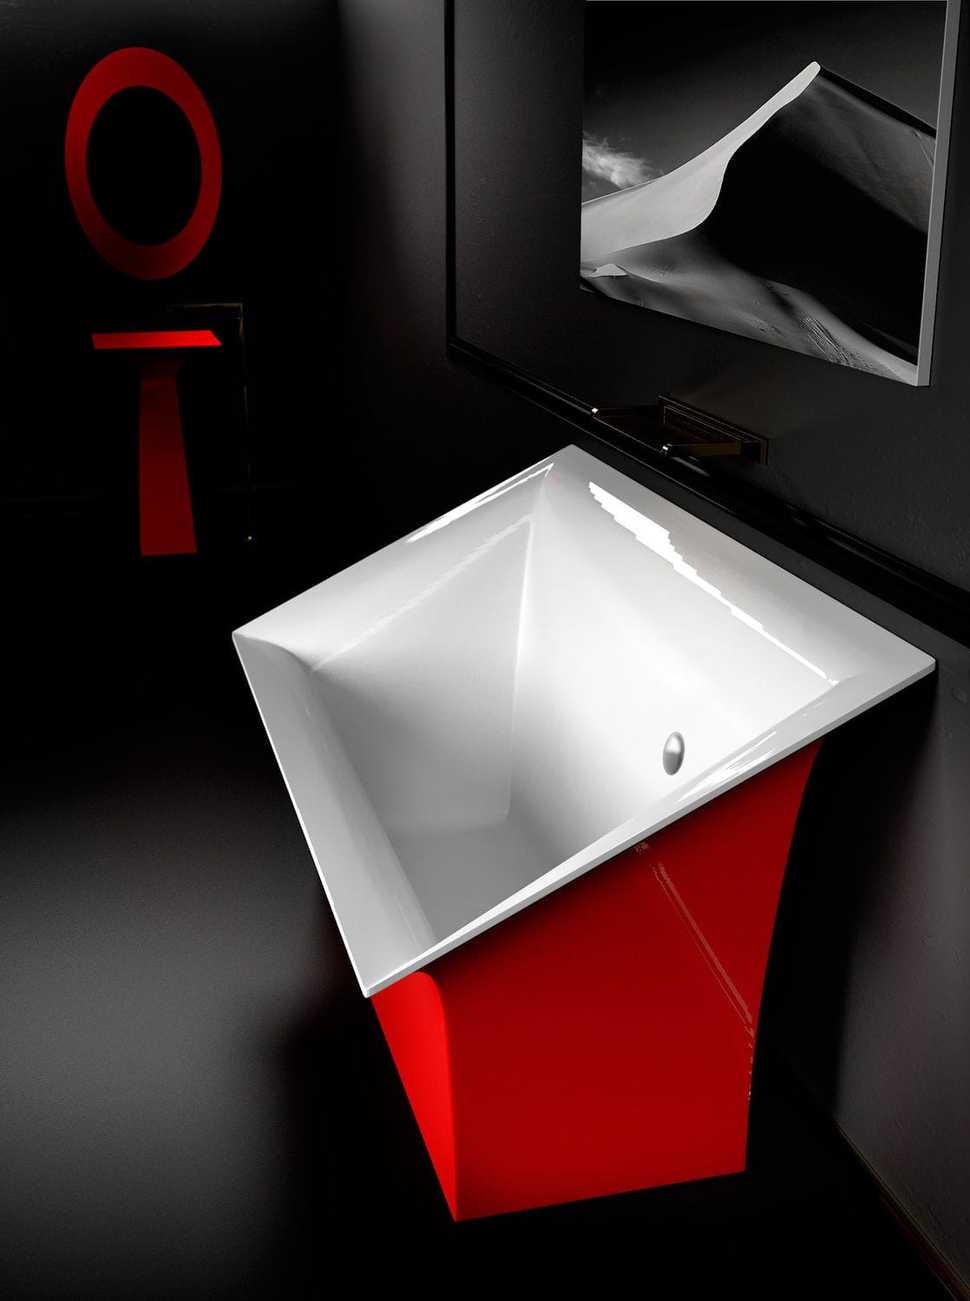 mini-bathtubs-shower-glass-design-slr-roma-red.jpg